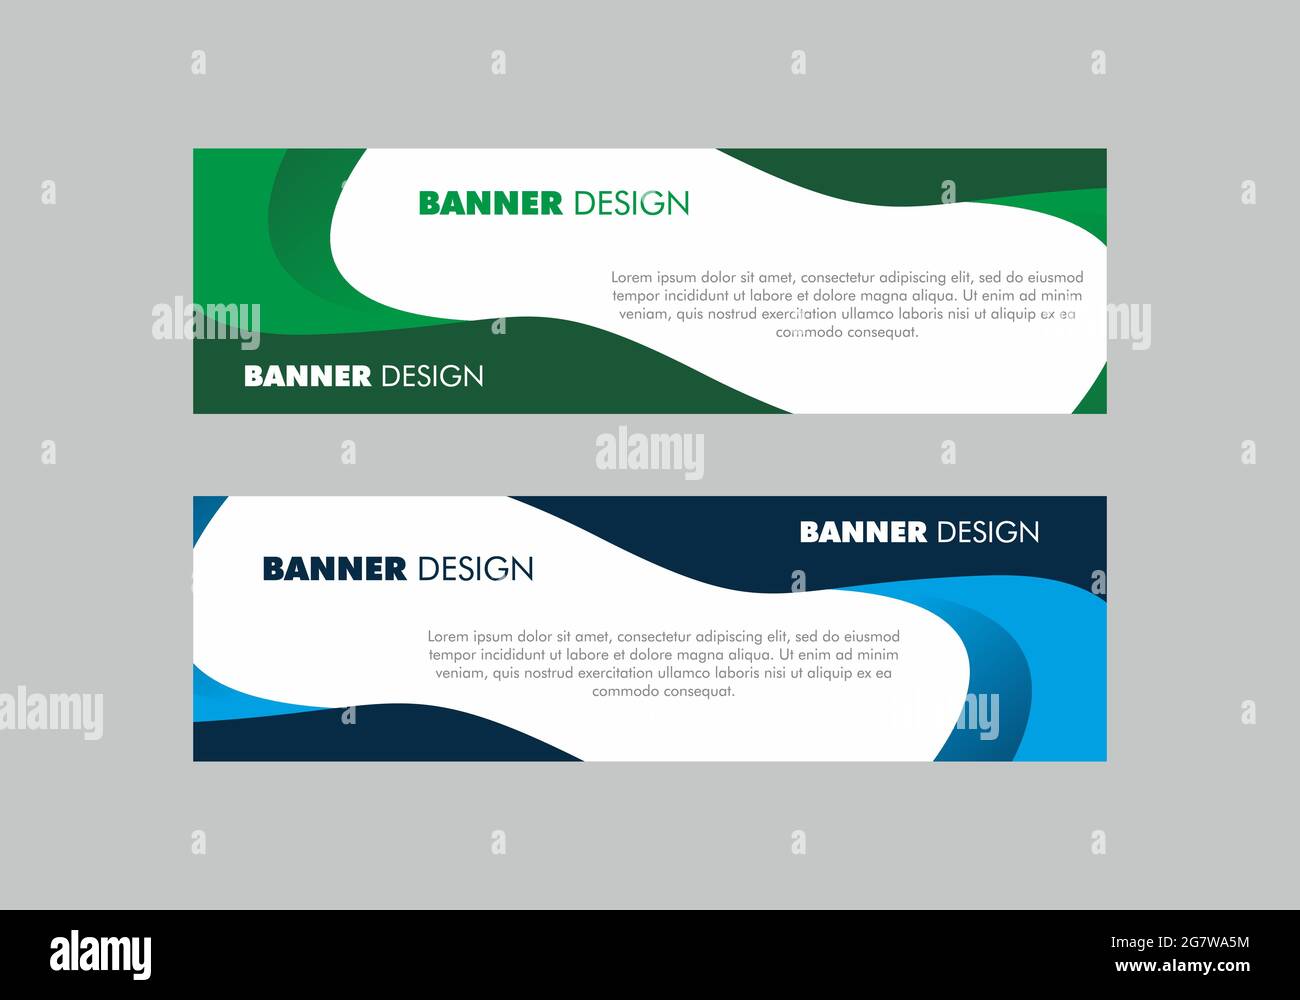 Grüne und blaue Farbe des rechteckigen Banners oder der Kopfzeile  Stock-Vektorgrafik - Alamy